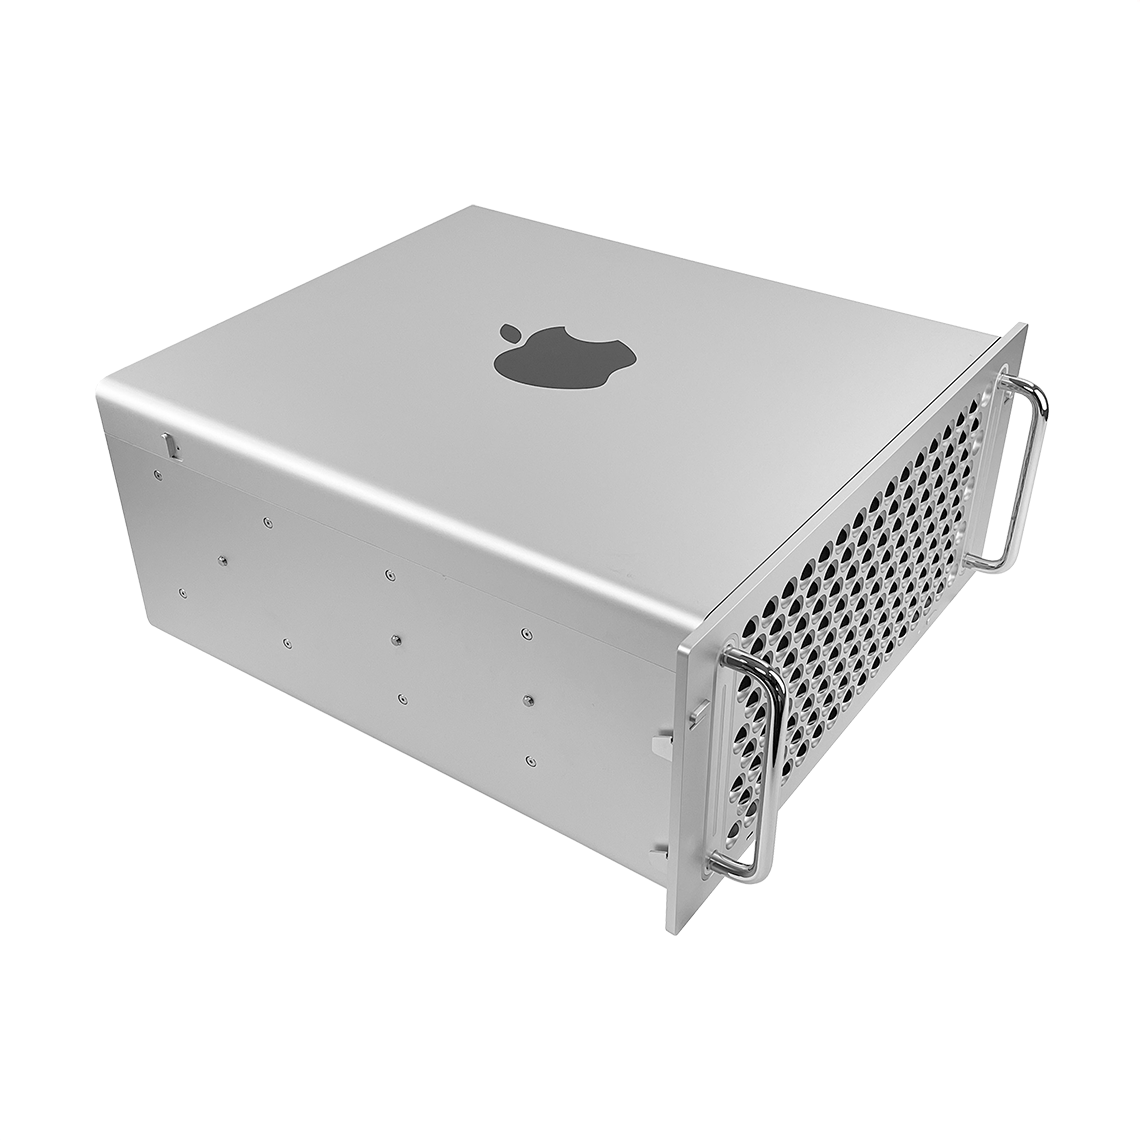 Apple 2019 Mac Pro - Intel Xeon 16-Core, 192GB RAM, 2TB Flash, AMD Radeon Pro Vega II Duo 64GB, Rack Mount, Grade A